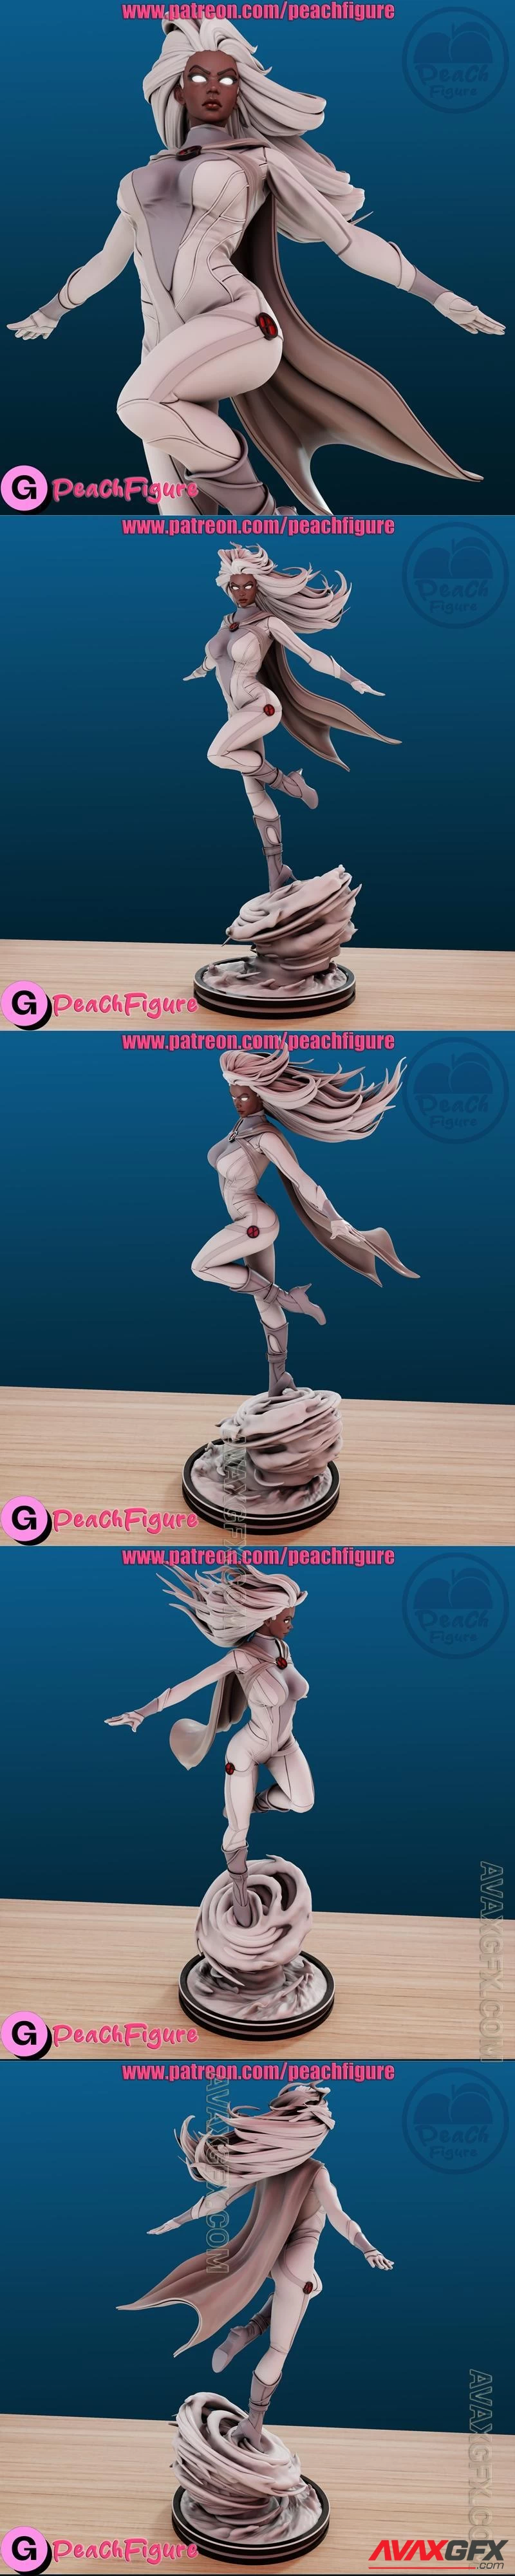 Peach Figure - Storm X-men - STL 3D Model